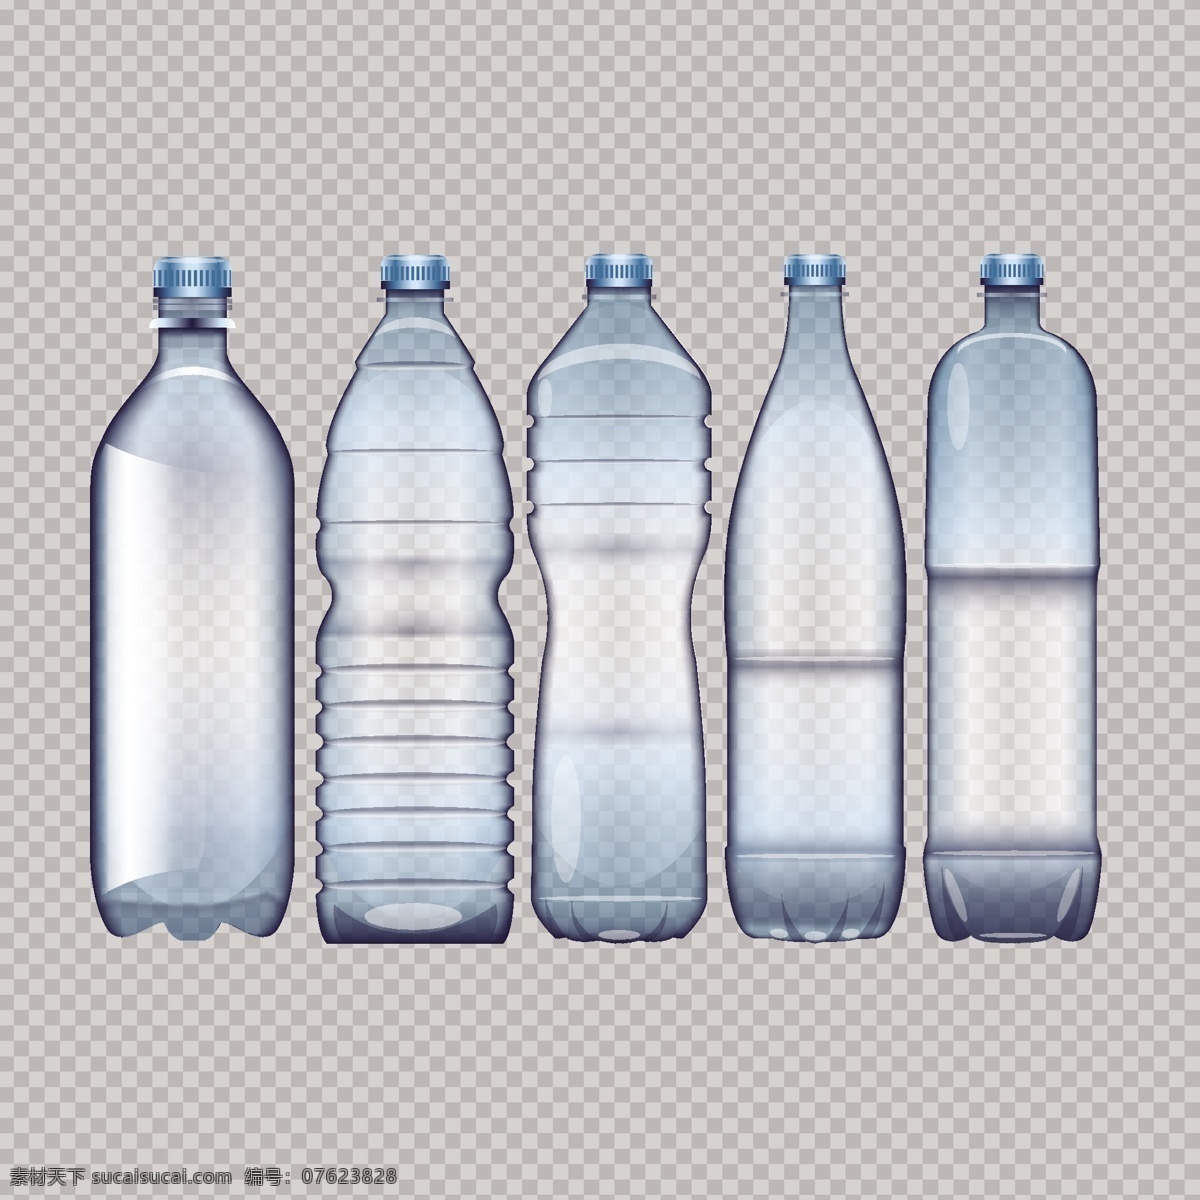 矢量 包装 塑料瓶 矢量包装 塑料瓶包装 矿泉水 瓶子